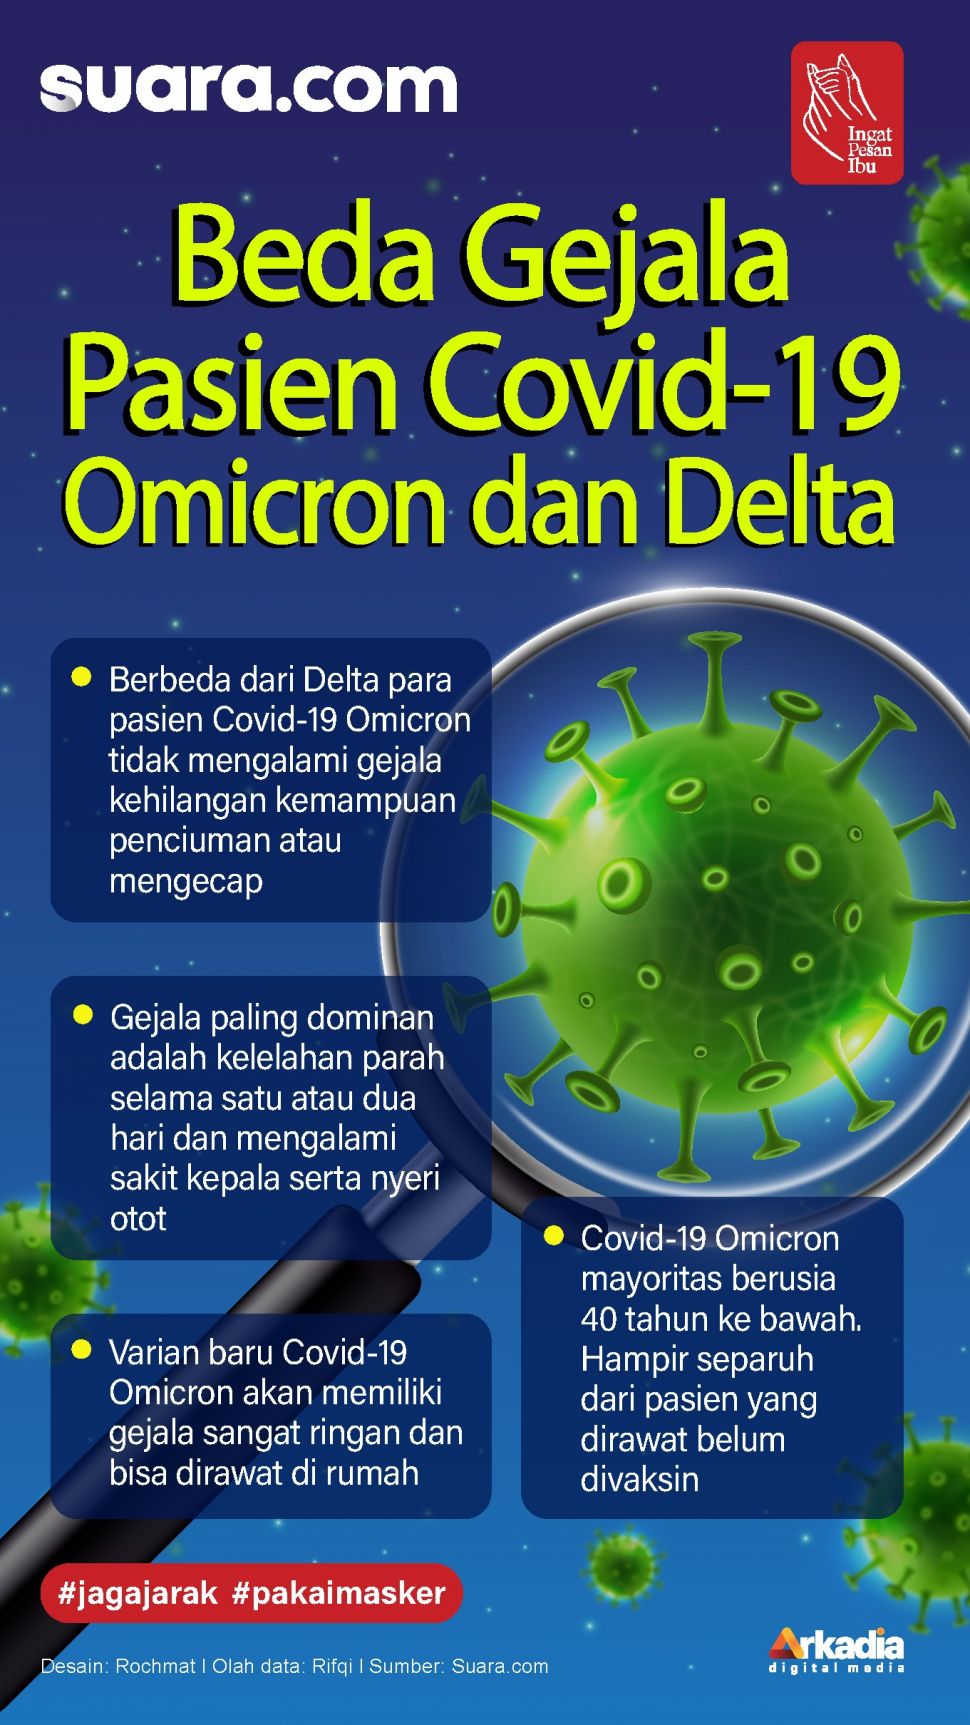 Les patients infectés par la nouvelle variante d'Omicron Covid-19 présenteront des symptômes très légers et pourront être traités à domicile